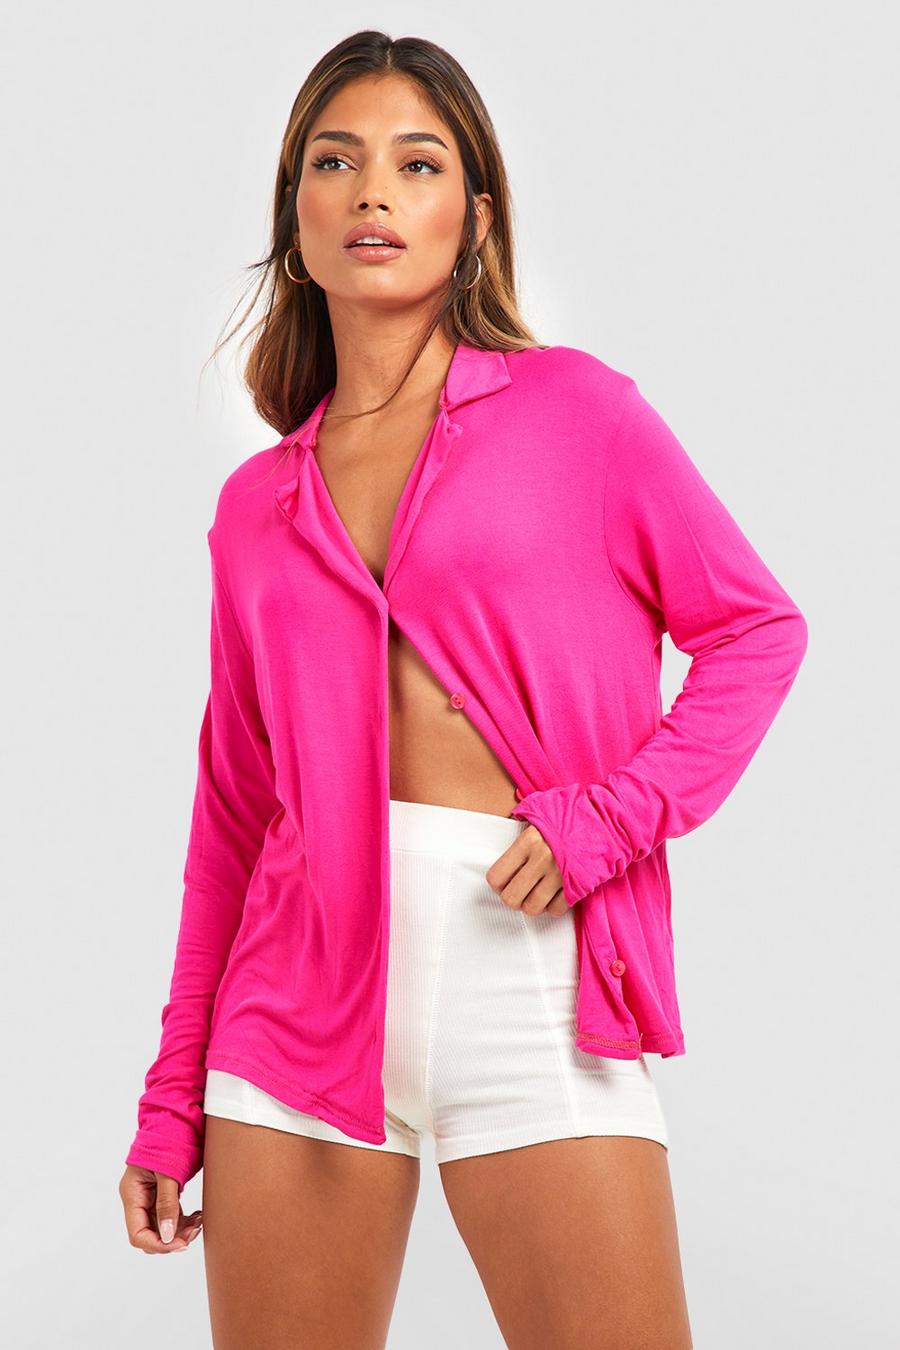 Hot pink Jersey Knit Long Sleeve Button Up Pj Shirt